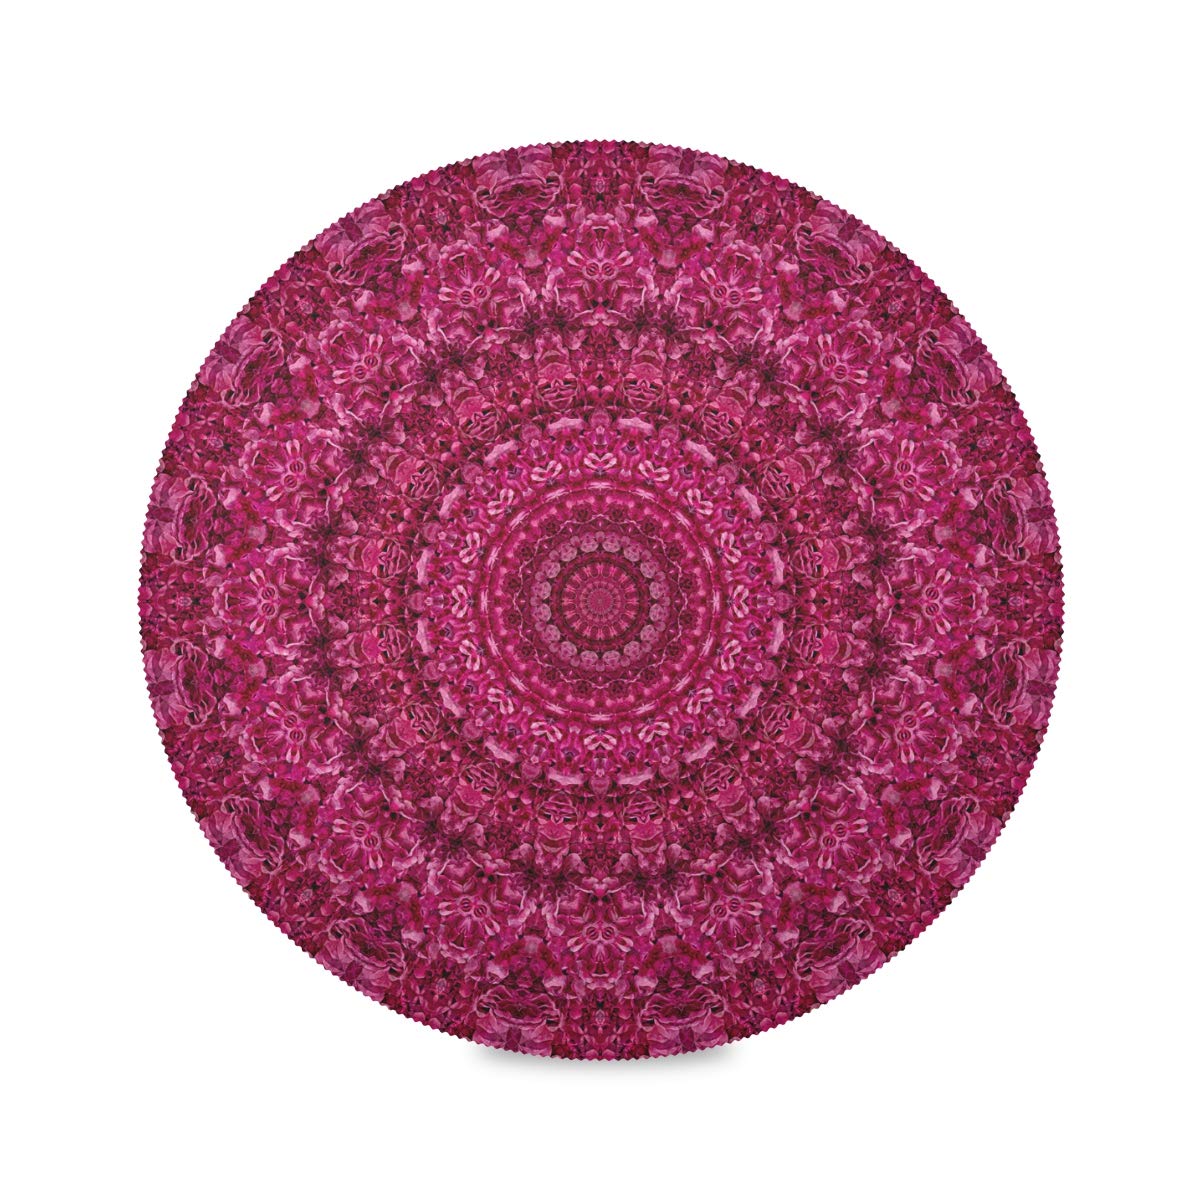 Runde Tischsets Magenta Pink Floral Mandala Abstrakt Platzsets Set 6 Stück Hitzebeständig 39,1 cm Leicht zu reinigen